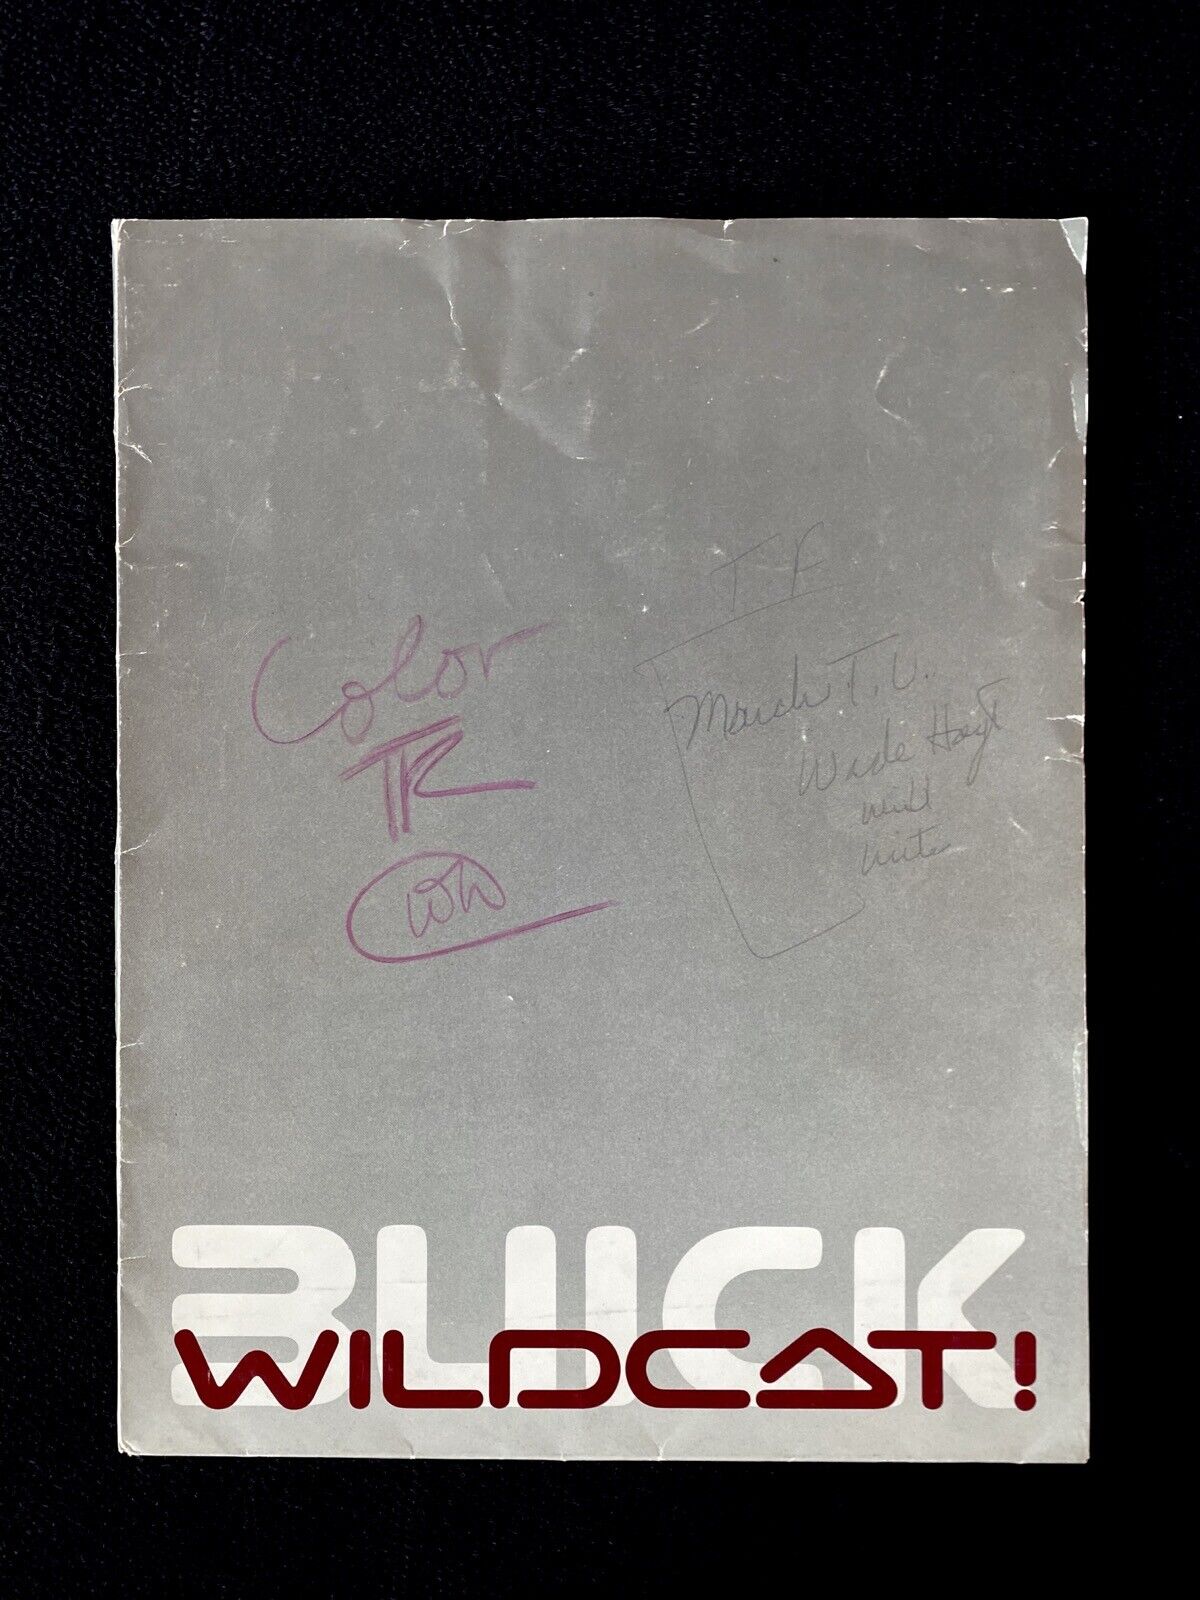 1985 Buick Wildcat Concept Car Press Kit Original Factory Photos 